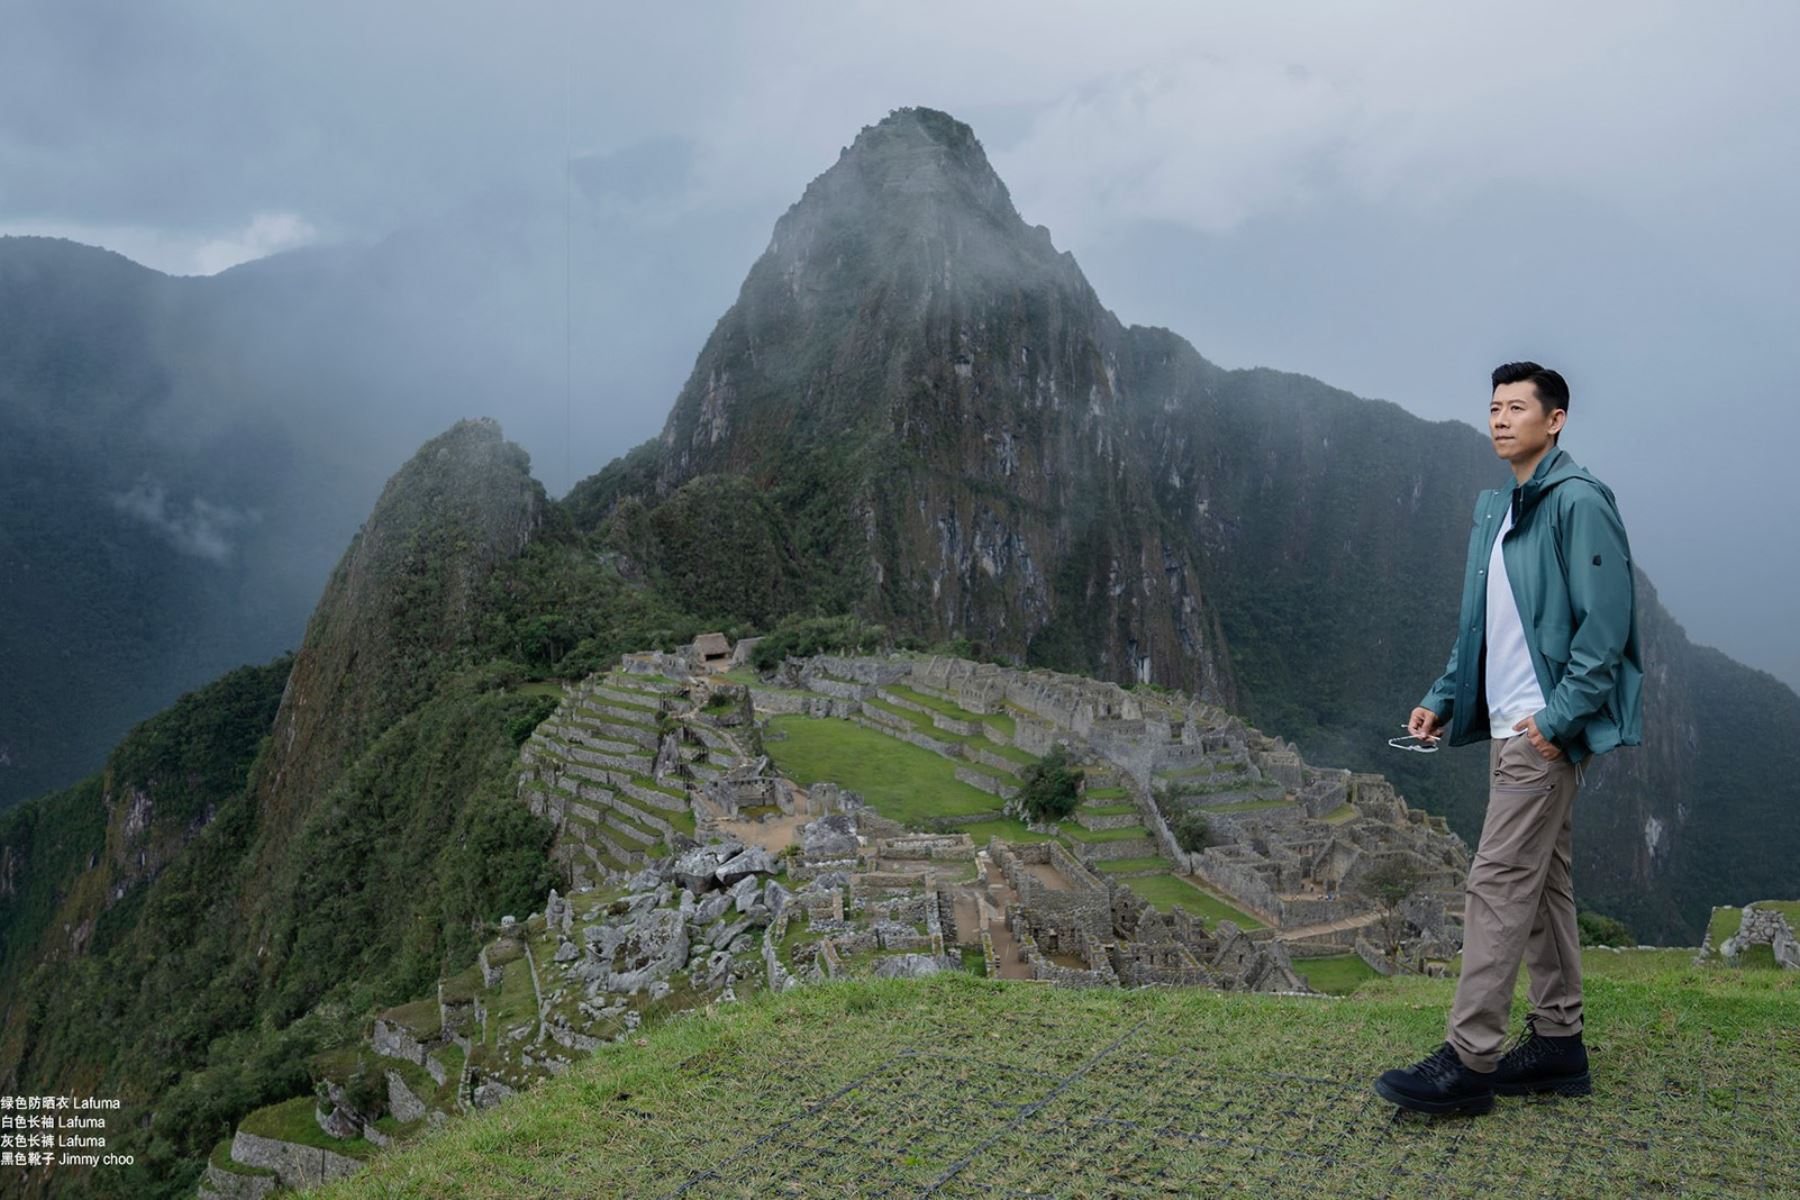 PromPerú invitó a China a vivir la magia de los destinos turísticos del Perú.